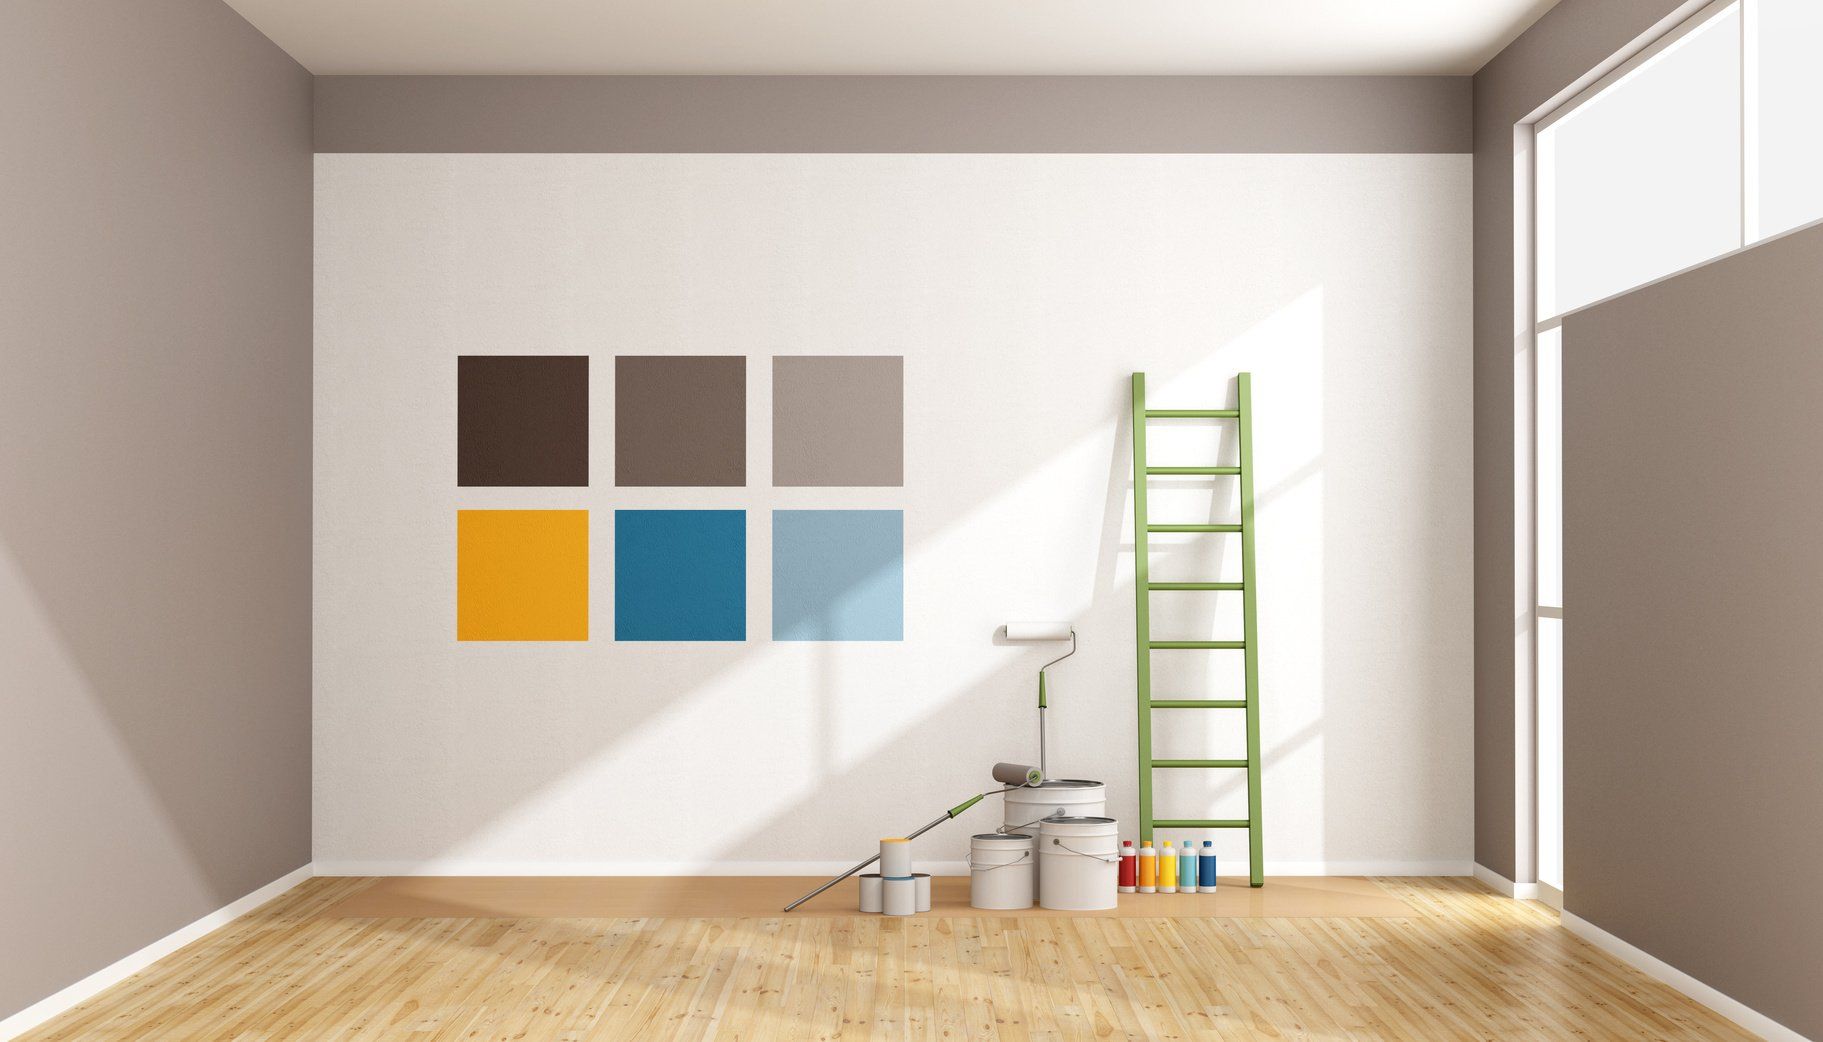 Choix et utilisation du matériel de peinture - Décoration Murale